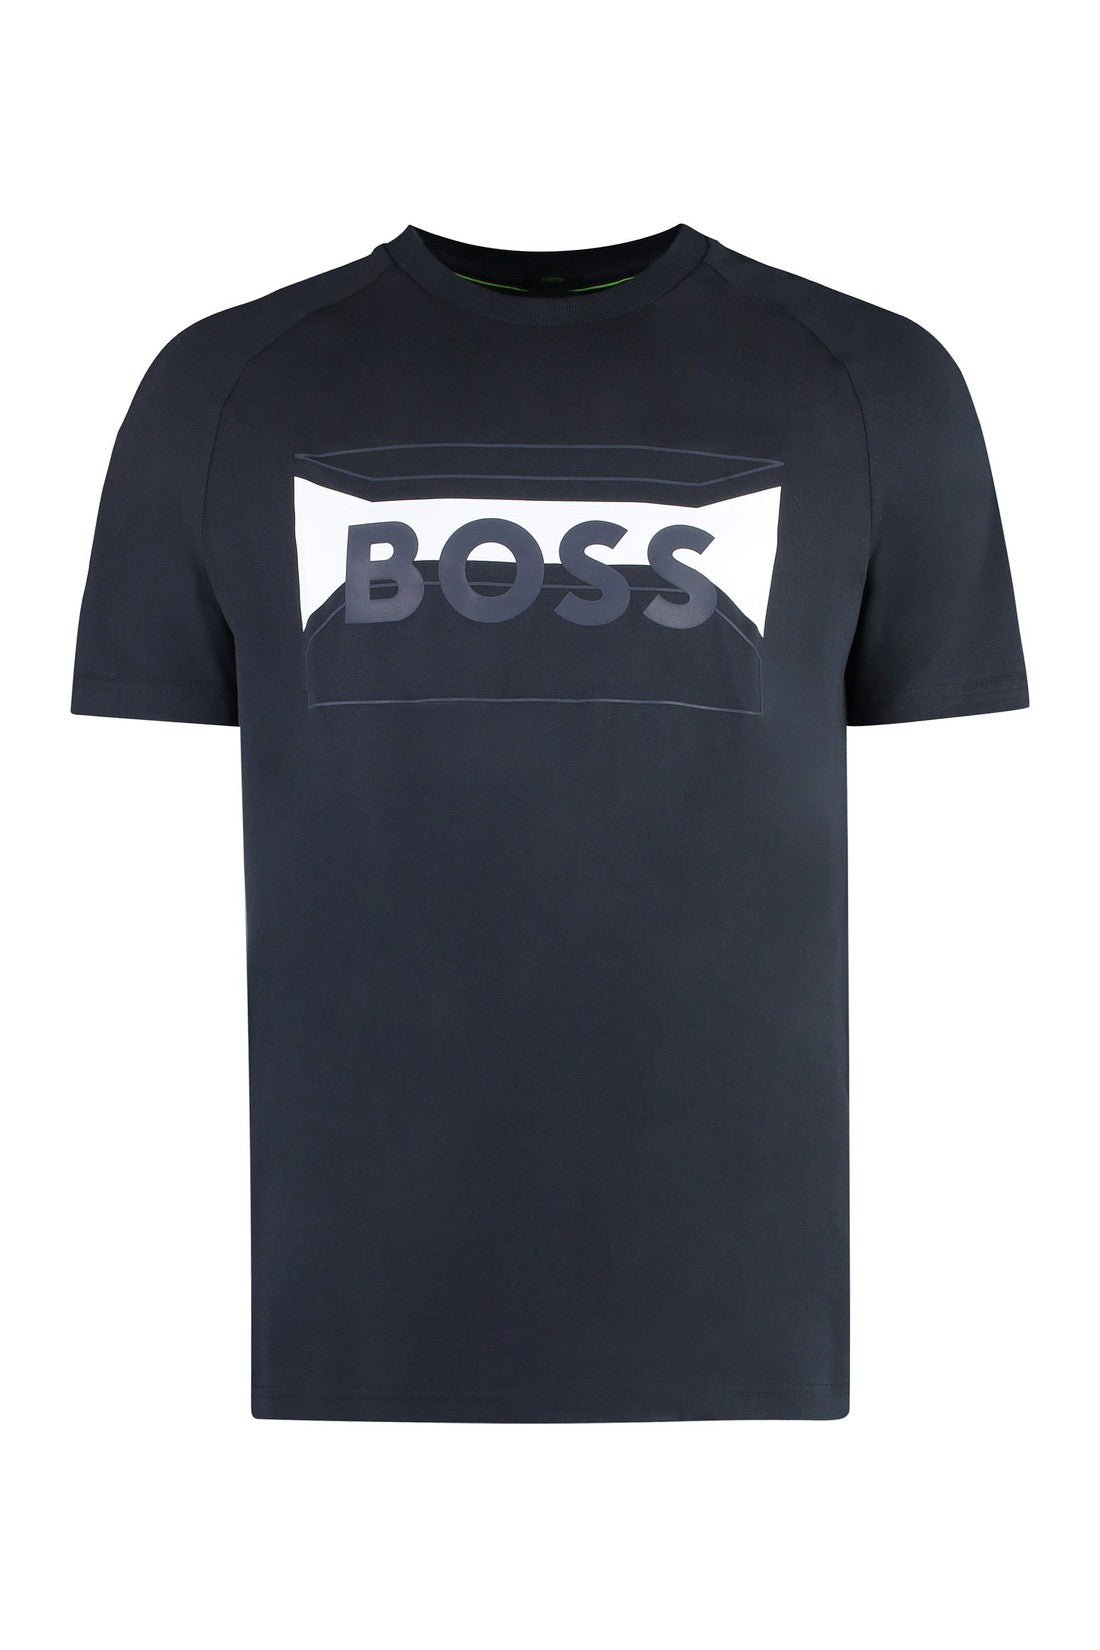 BOSS-OUTLET-SALE-Cotton blend T-shirt-ARCHIVIST